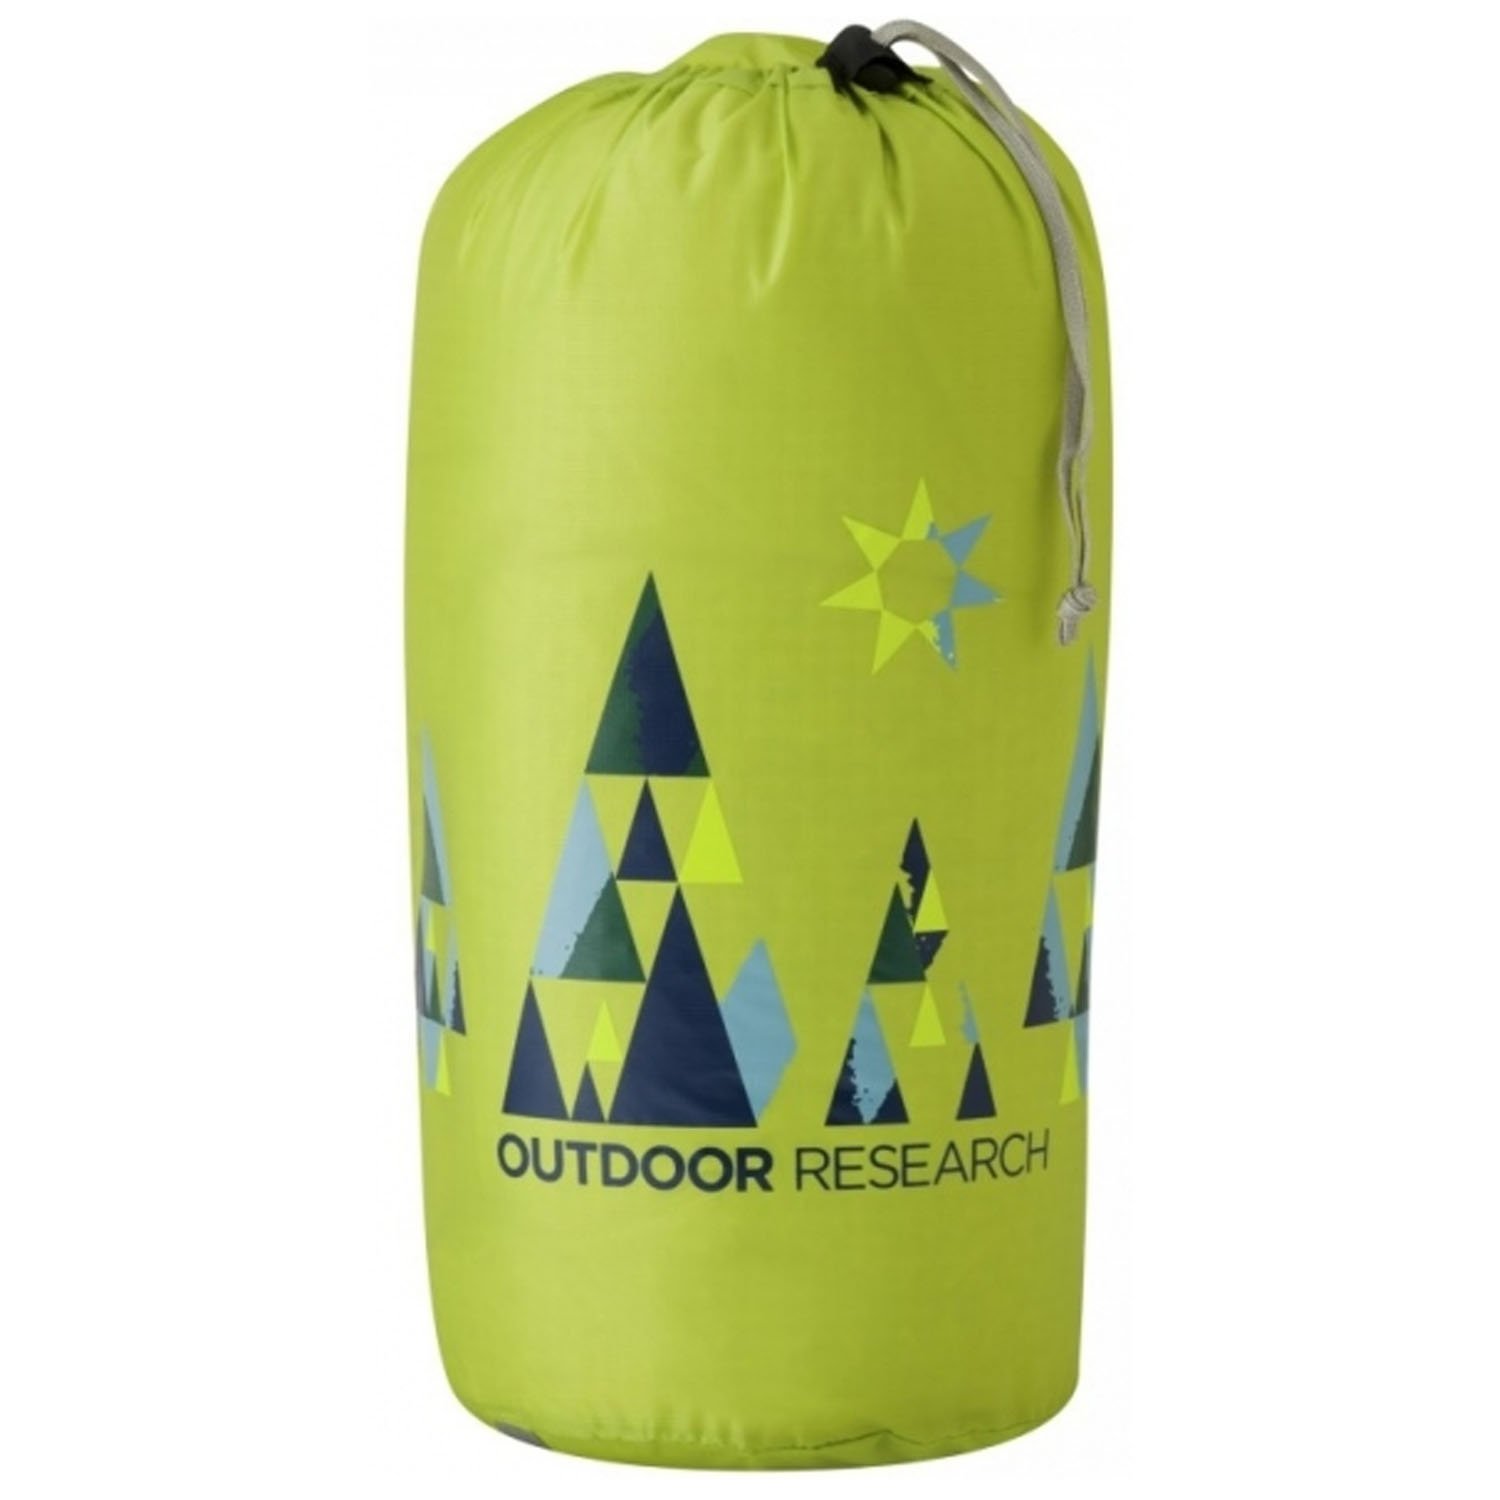 Влагозащитный мешок Outdoor Research Woodsy, 15 литров, lemongrass, 2501760489